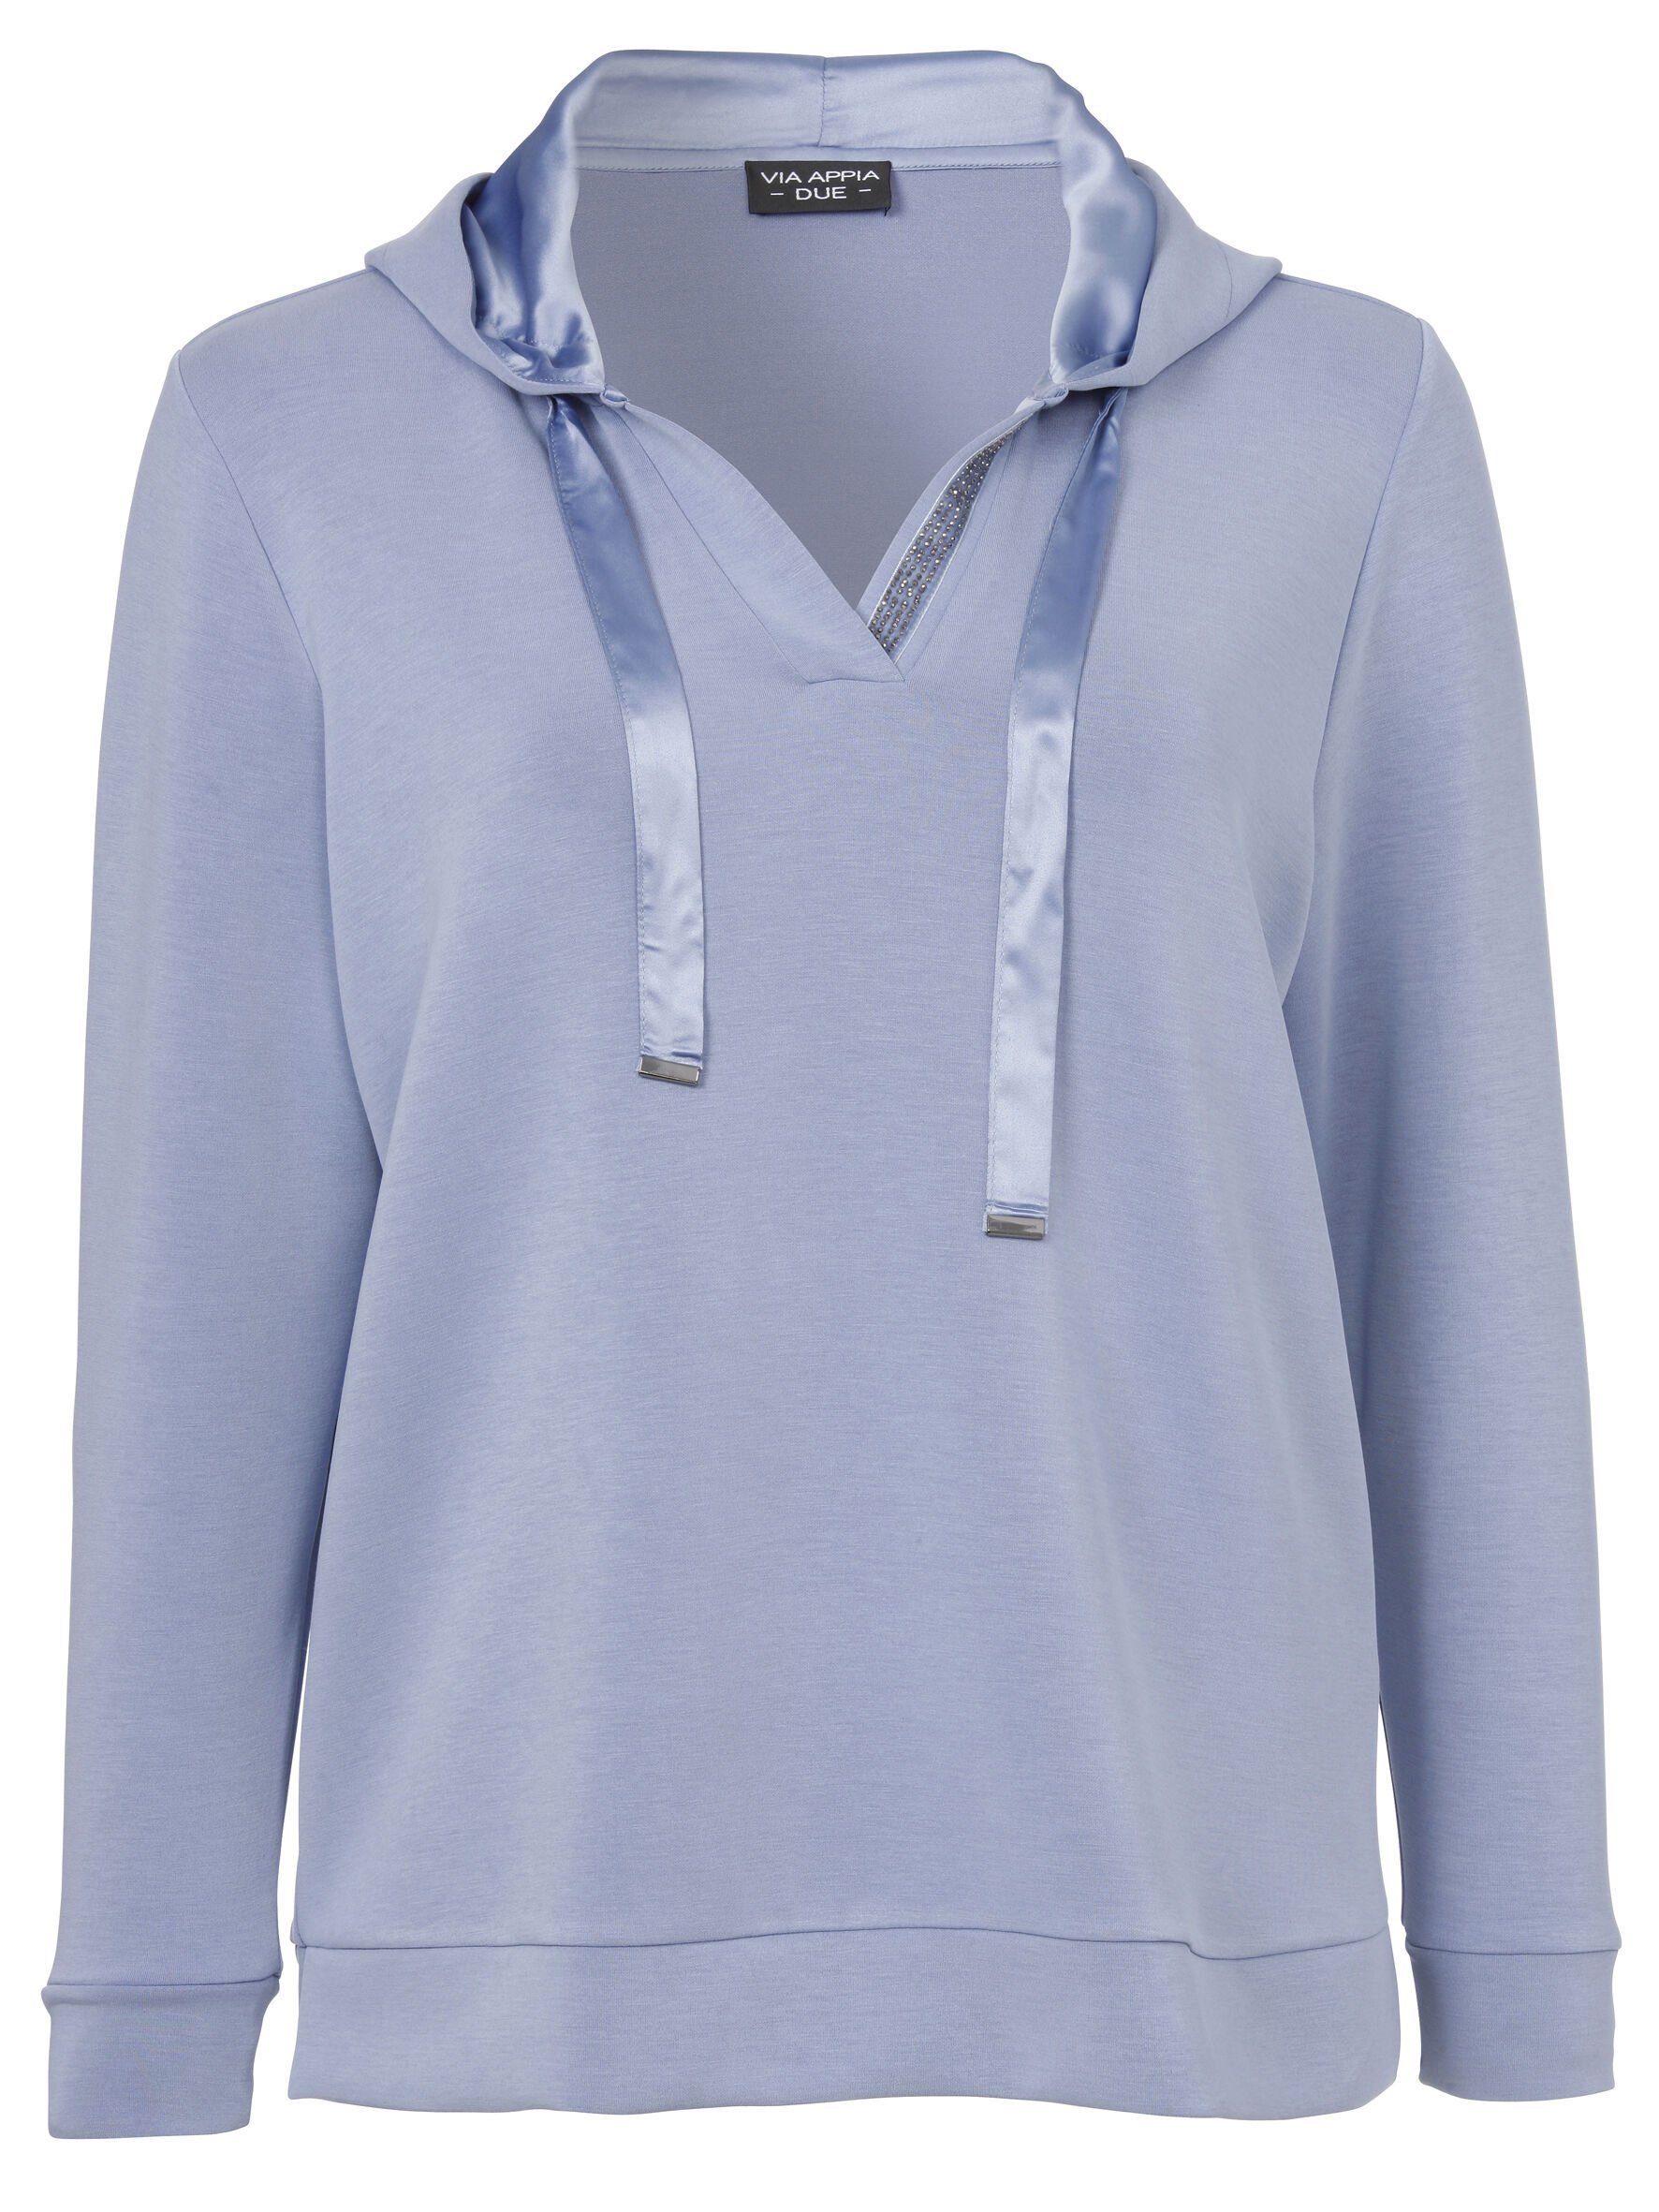 Stil Sportives hochwertigen APPIA Sweatshirt Sweatshirt in unifarbenem rauchblau Viskosemischung mit DUE VIA